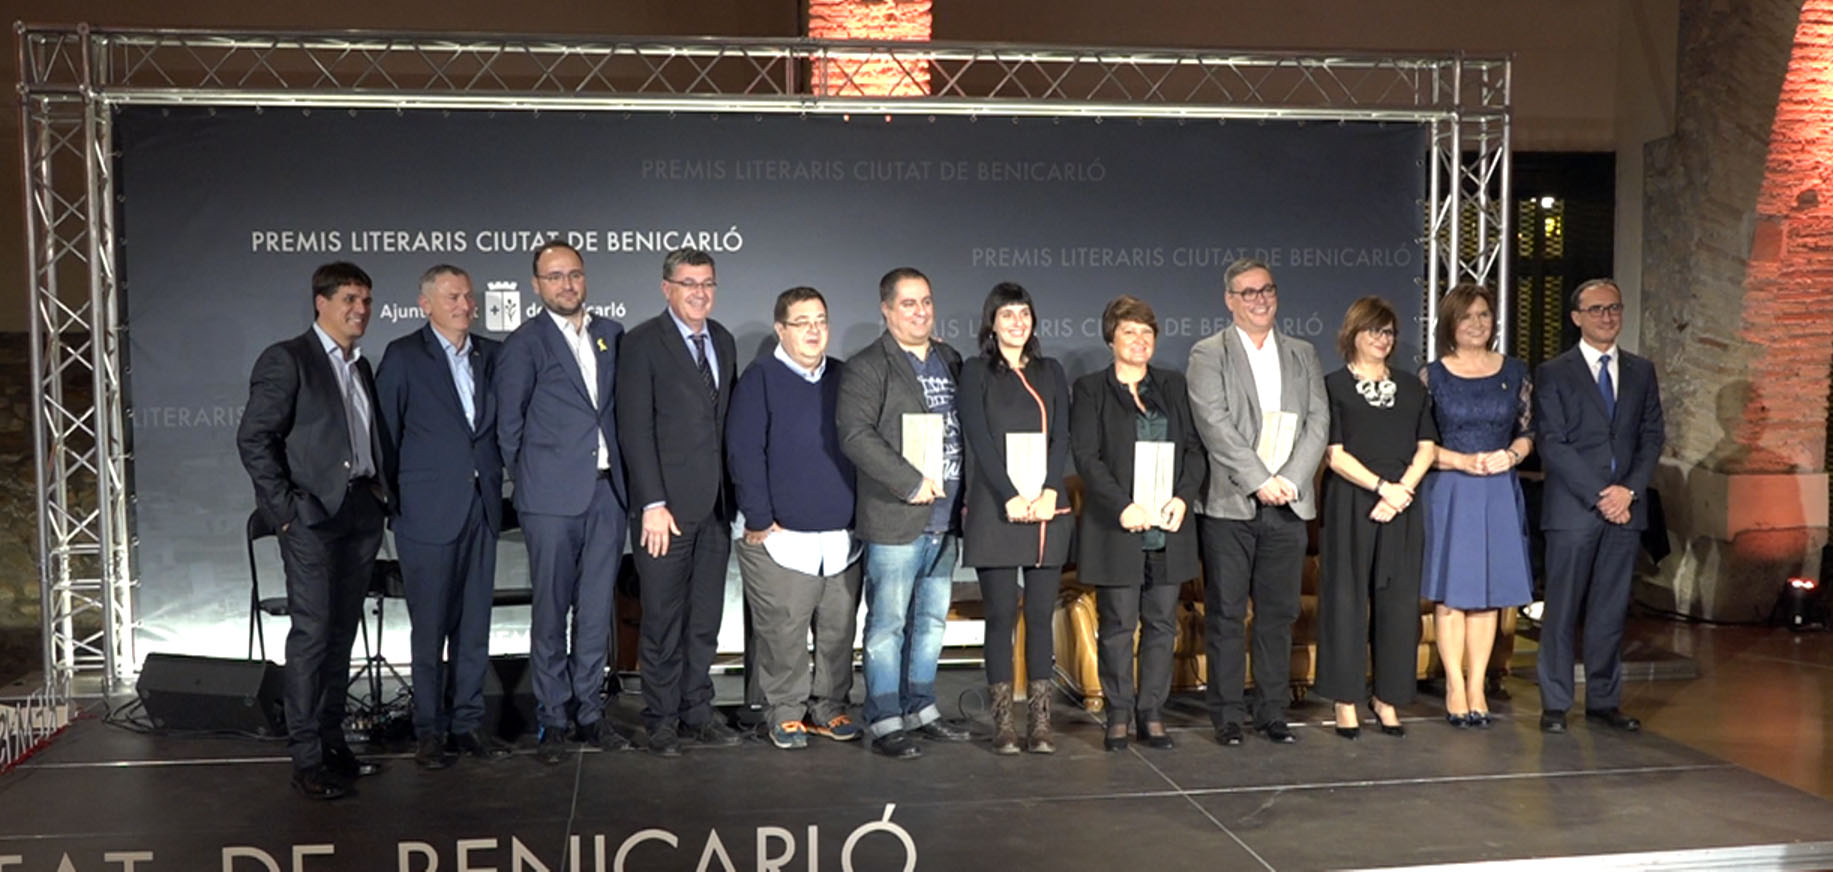 Els Premis Literaris Ciutat de Benicarló reben més de 140 obres originals